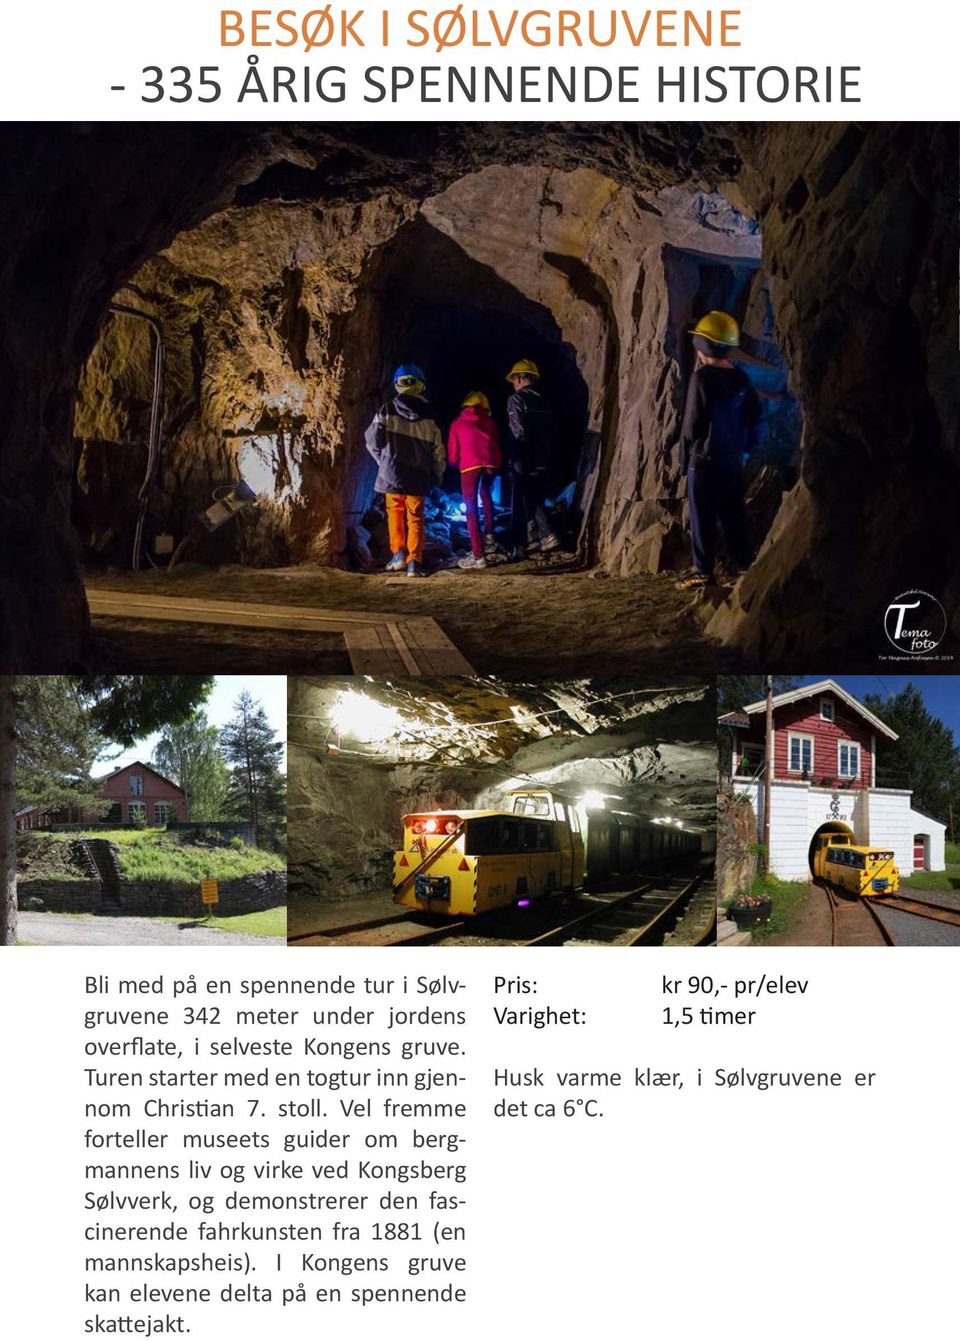 Vel fremme forteller museets guider om bergmannens liv og virke ved Kongsberg Sølvverk, og demonstrerer den fascinerende